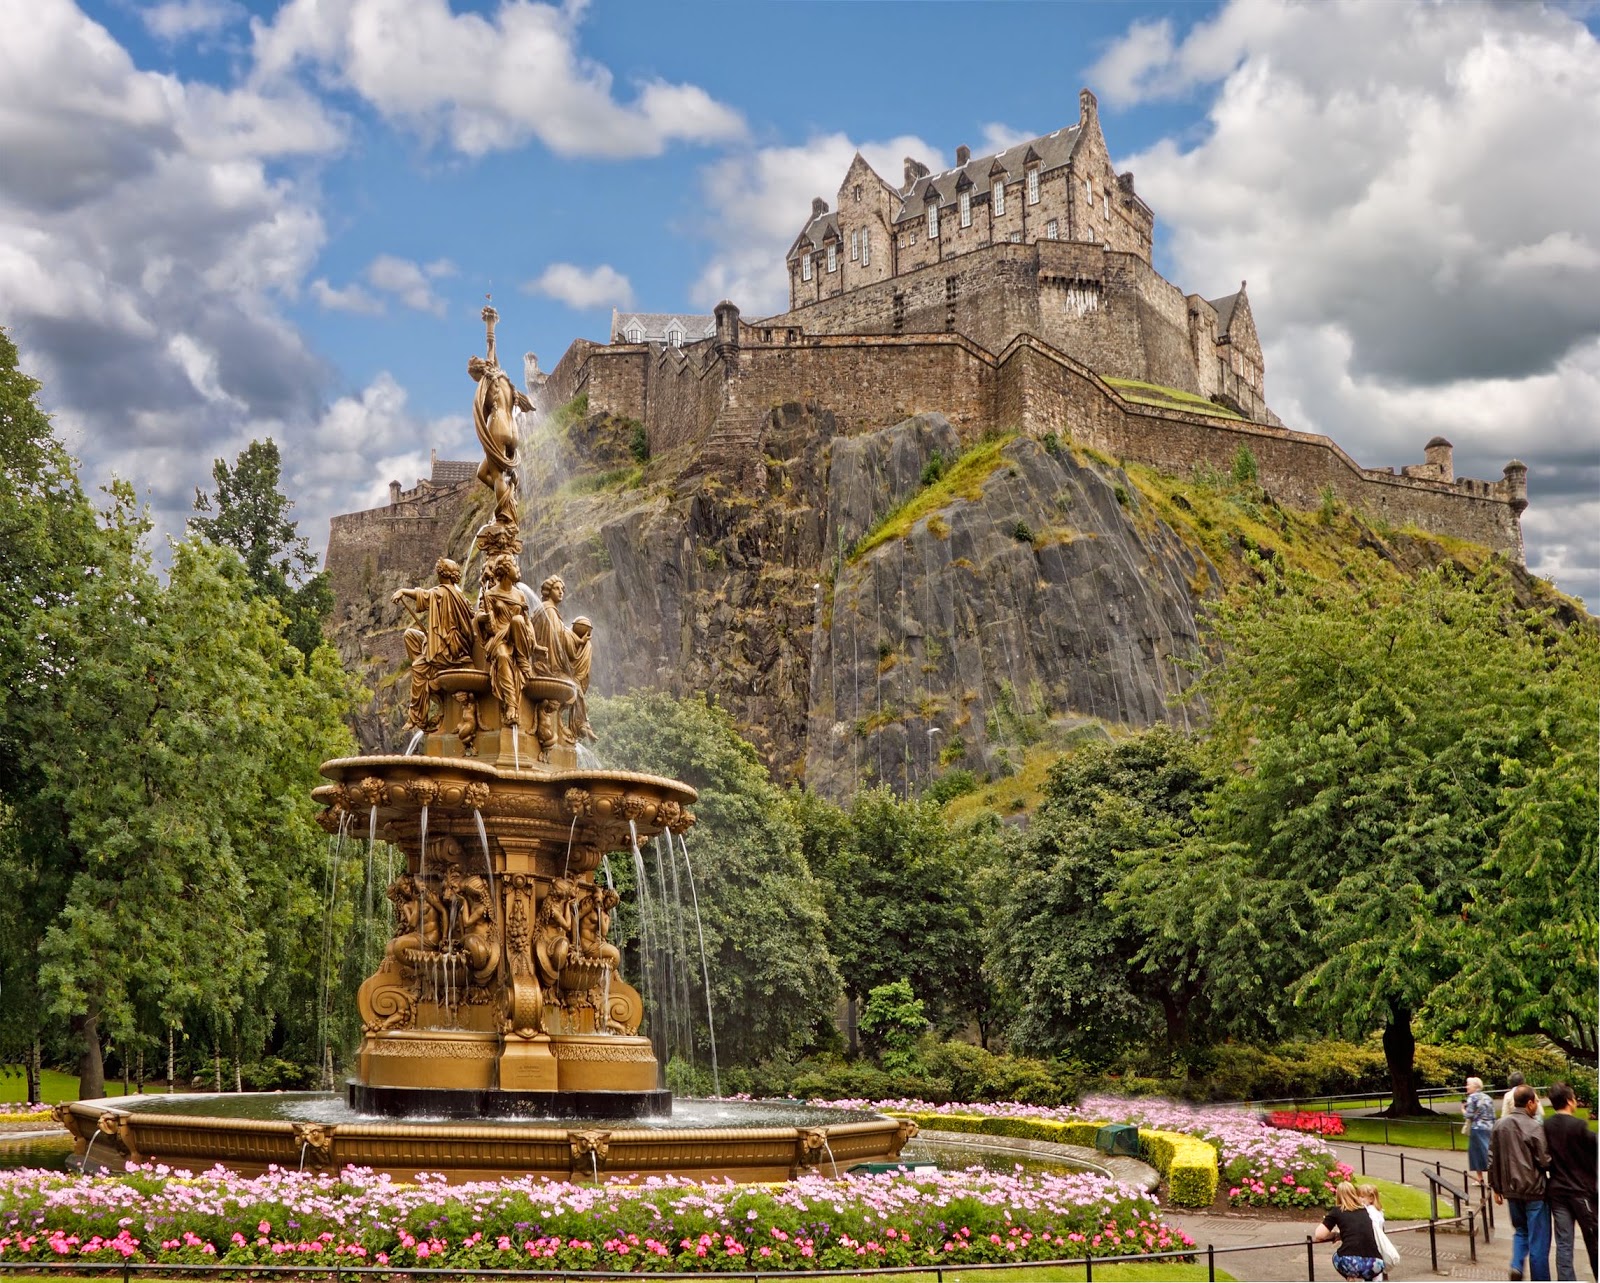 TheRoss Fountain below Edinburgh Castle in Scotland